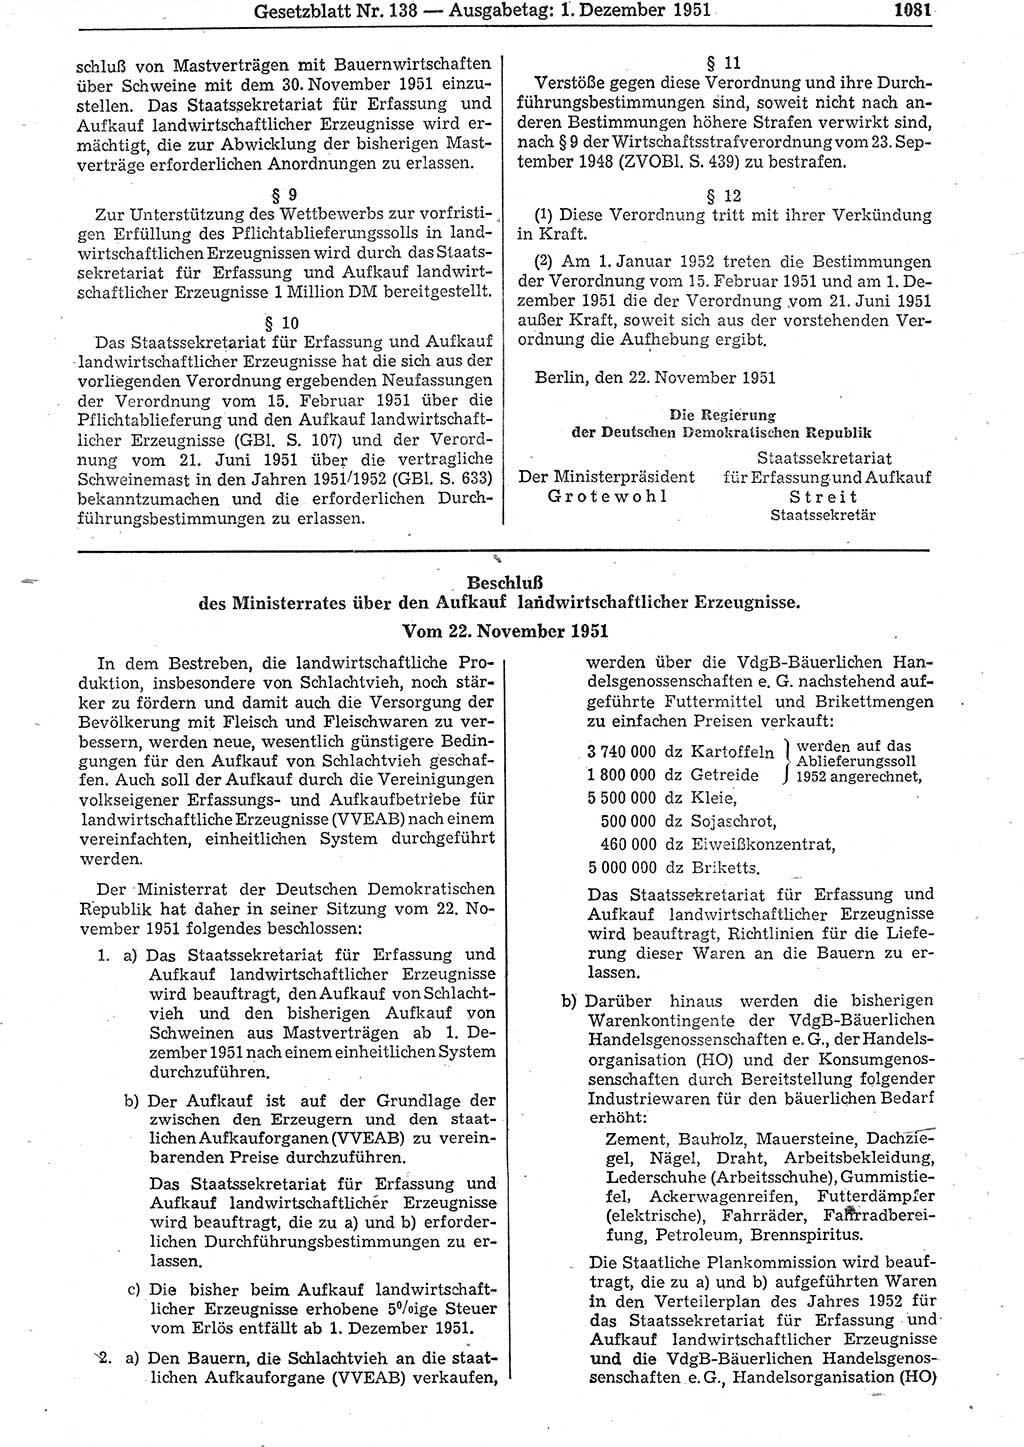 Gesetzblatt (GBl.) der Deutschen Demokratischen Republik (DDR) 1951, Seite 1081 (GBl. DDR 1951, S. 1081)